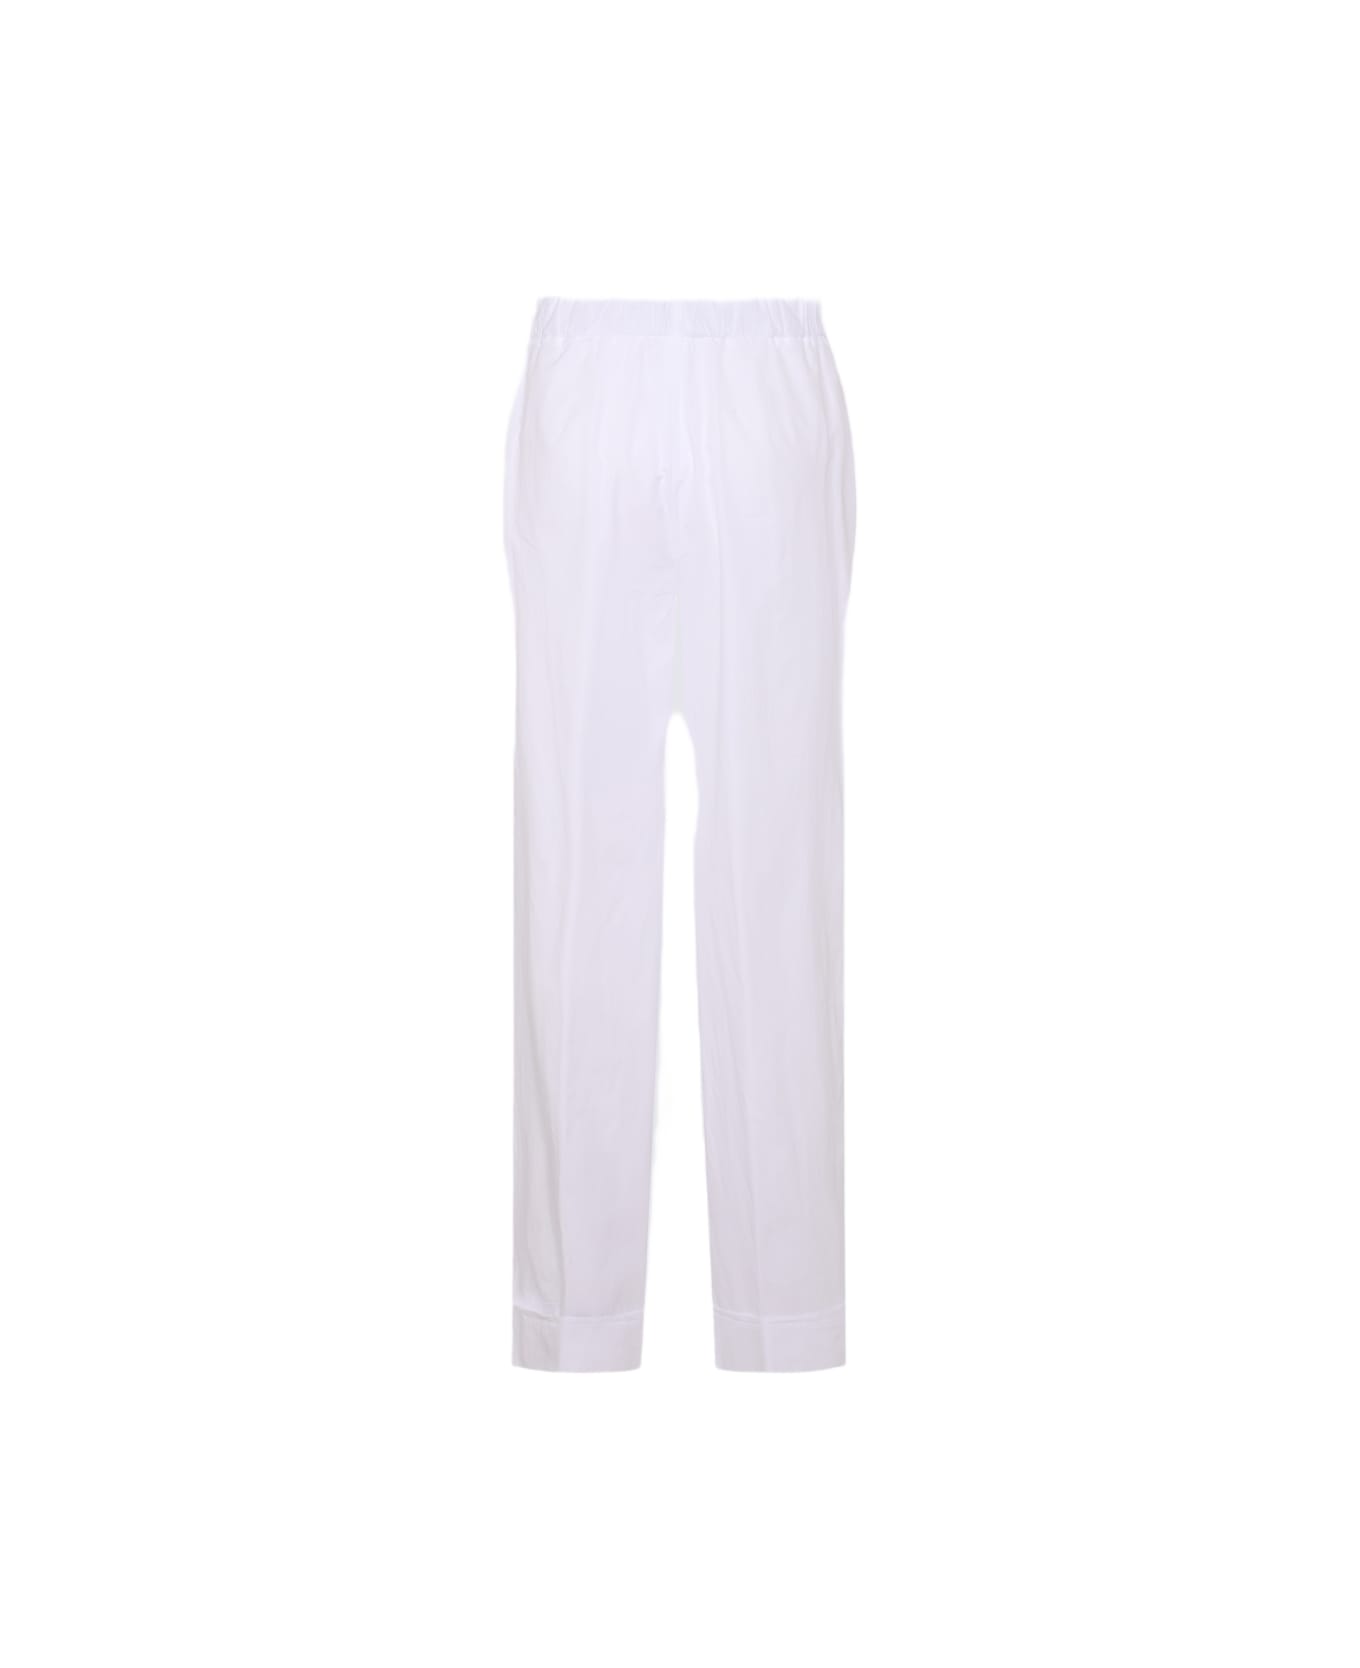 Malo White Cotton Stretch Pants - White